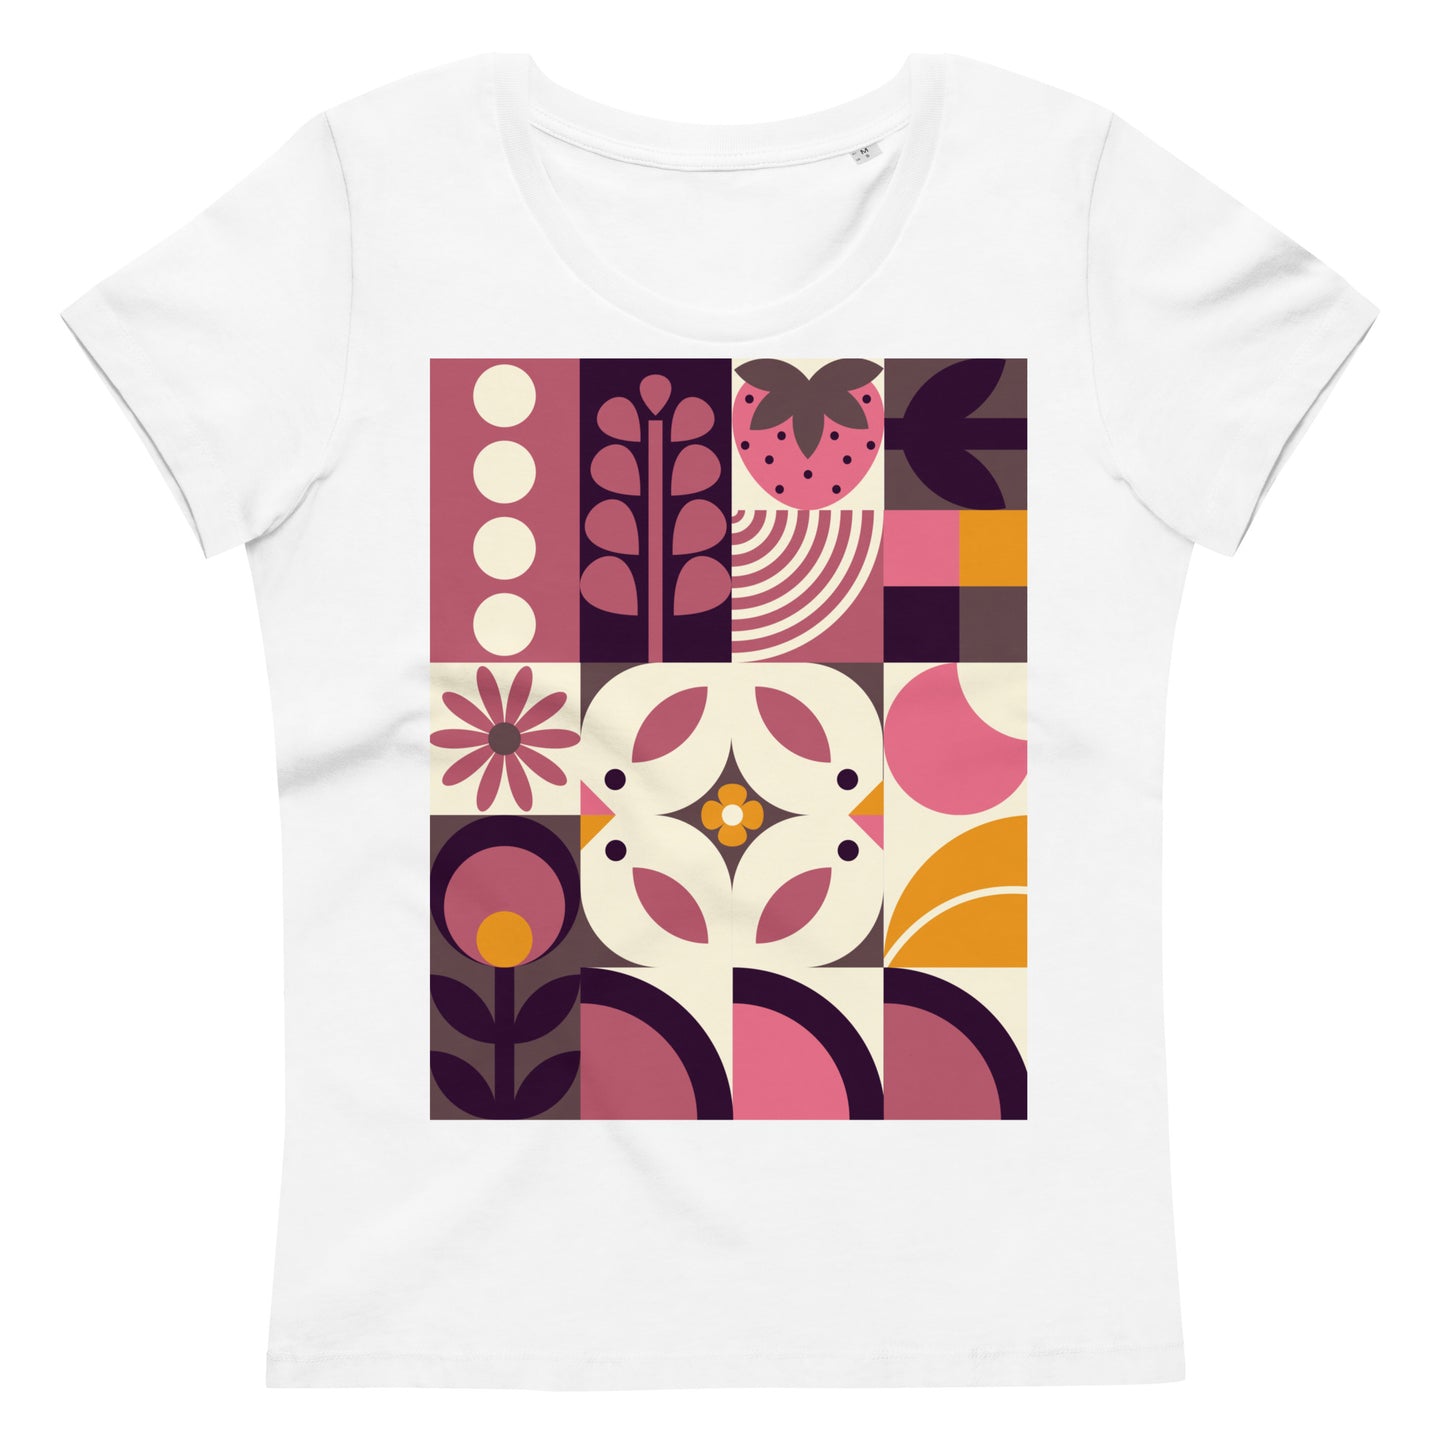 T-shirt "Spring birds bauhaus" - cotone organico - Donna